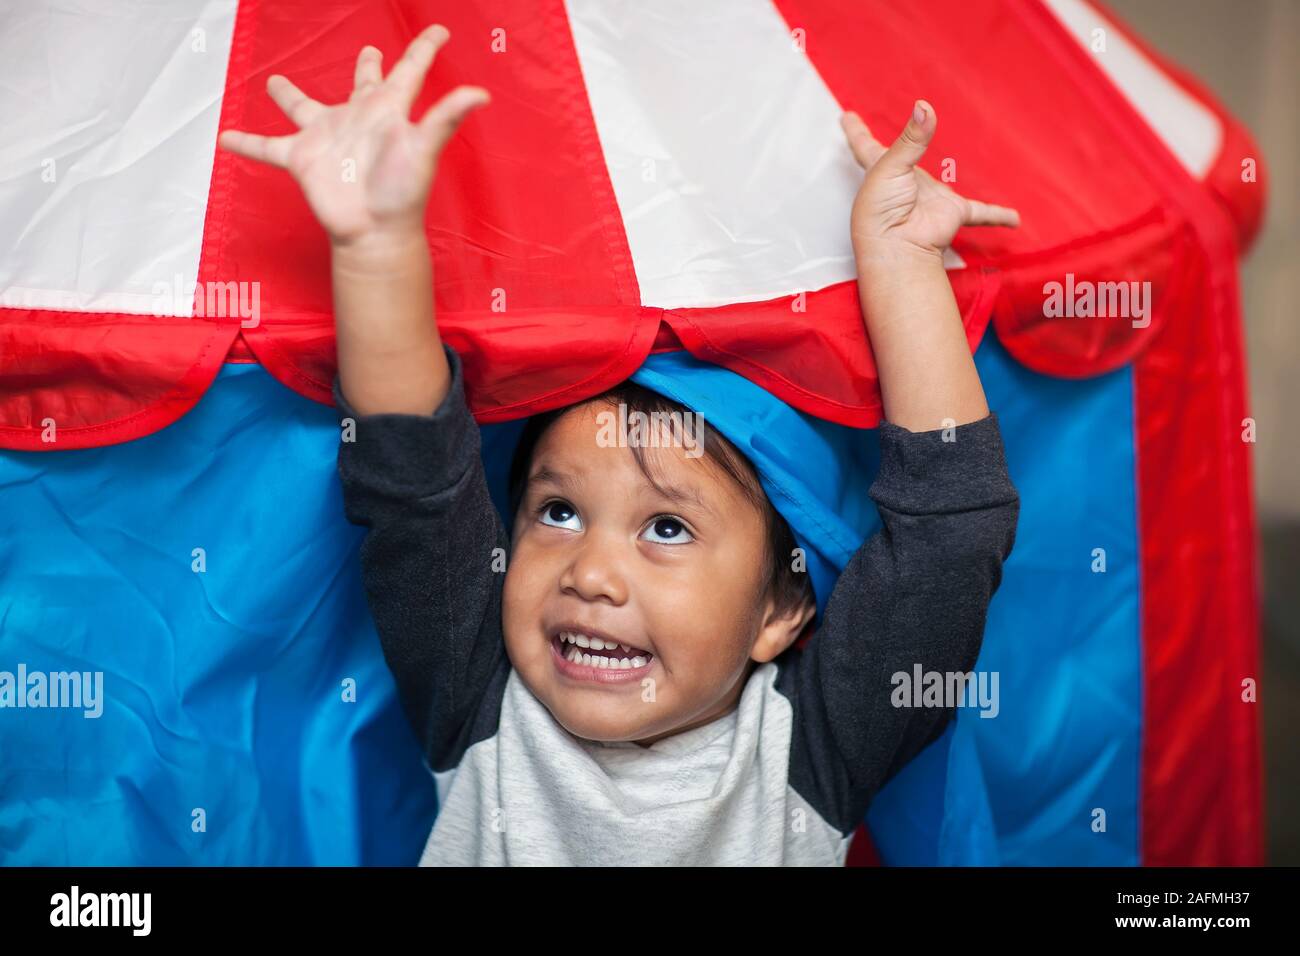 Un entusiasta giovane ragazzo saltando per la gioia che è rivolto verso il cielo come egli esce un rosso bianco e blu tenda play. Foto Stock